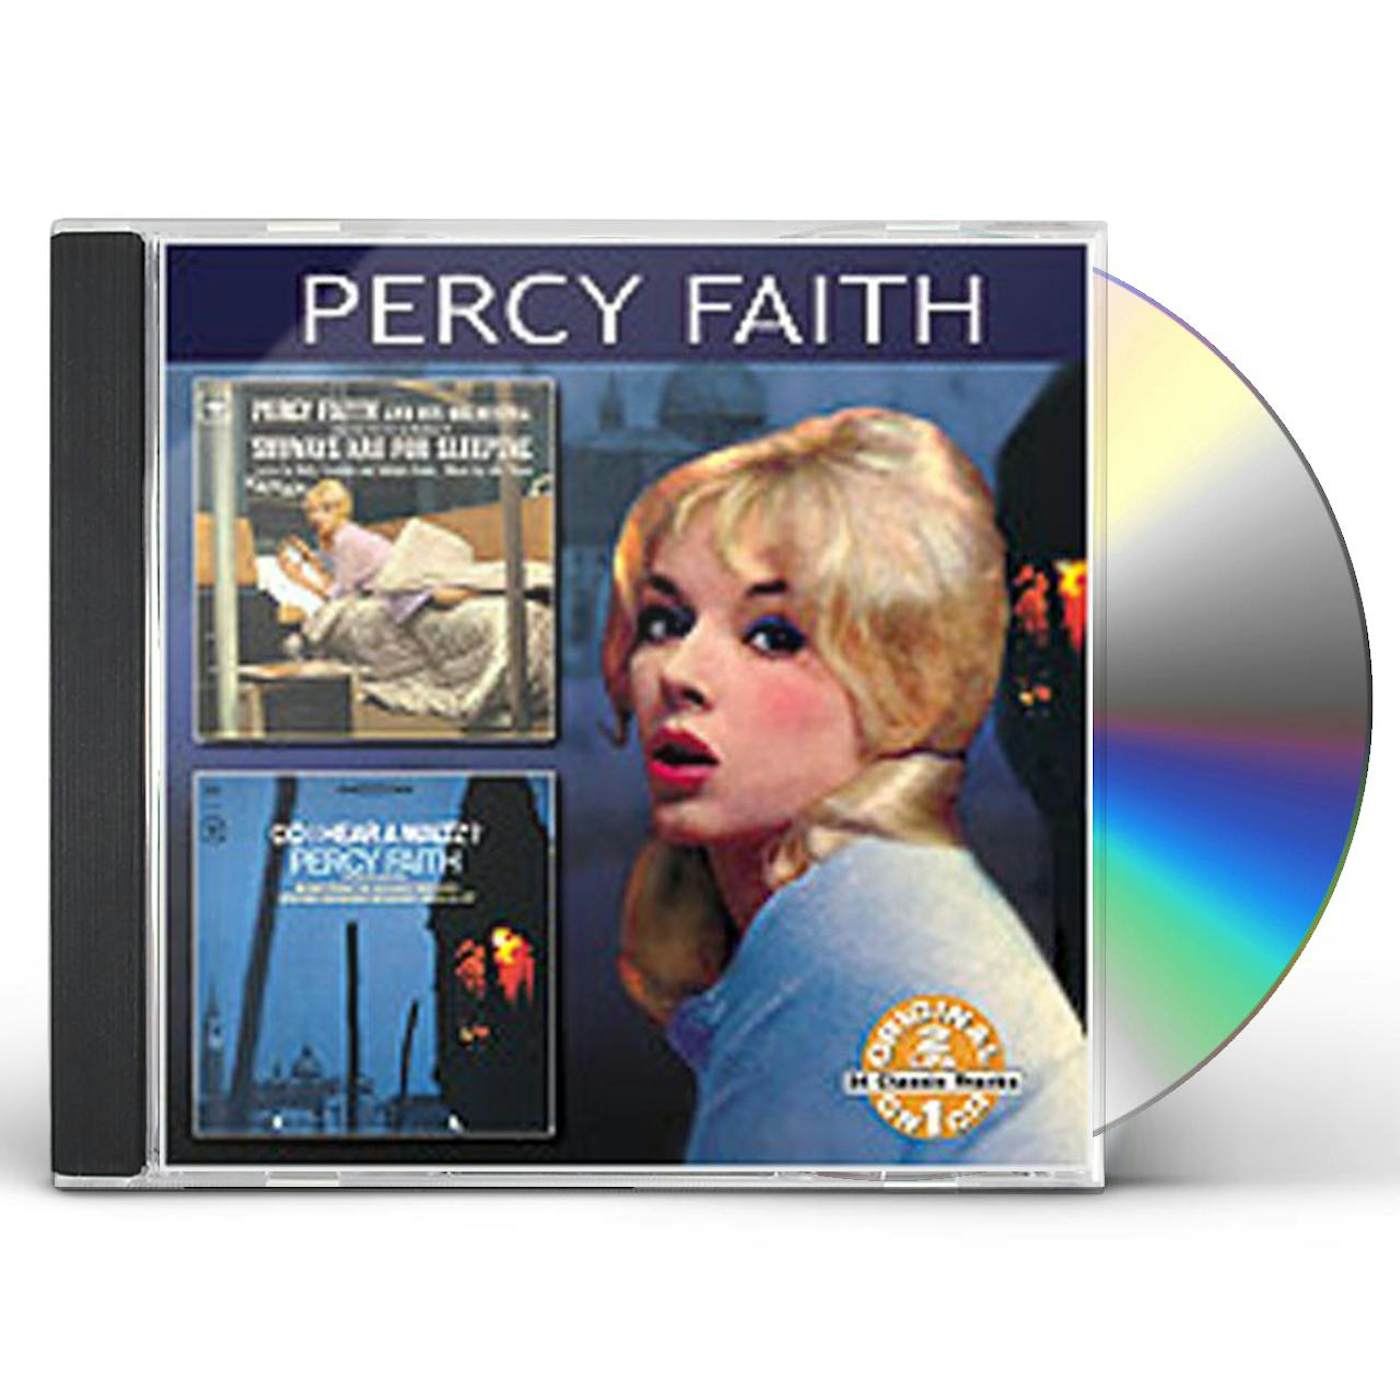 Percy Faith SUBWAYS ARE FOR SLEEPING / DO I HEAR A WALTZ CD